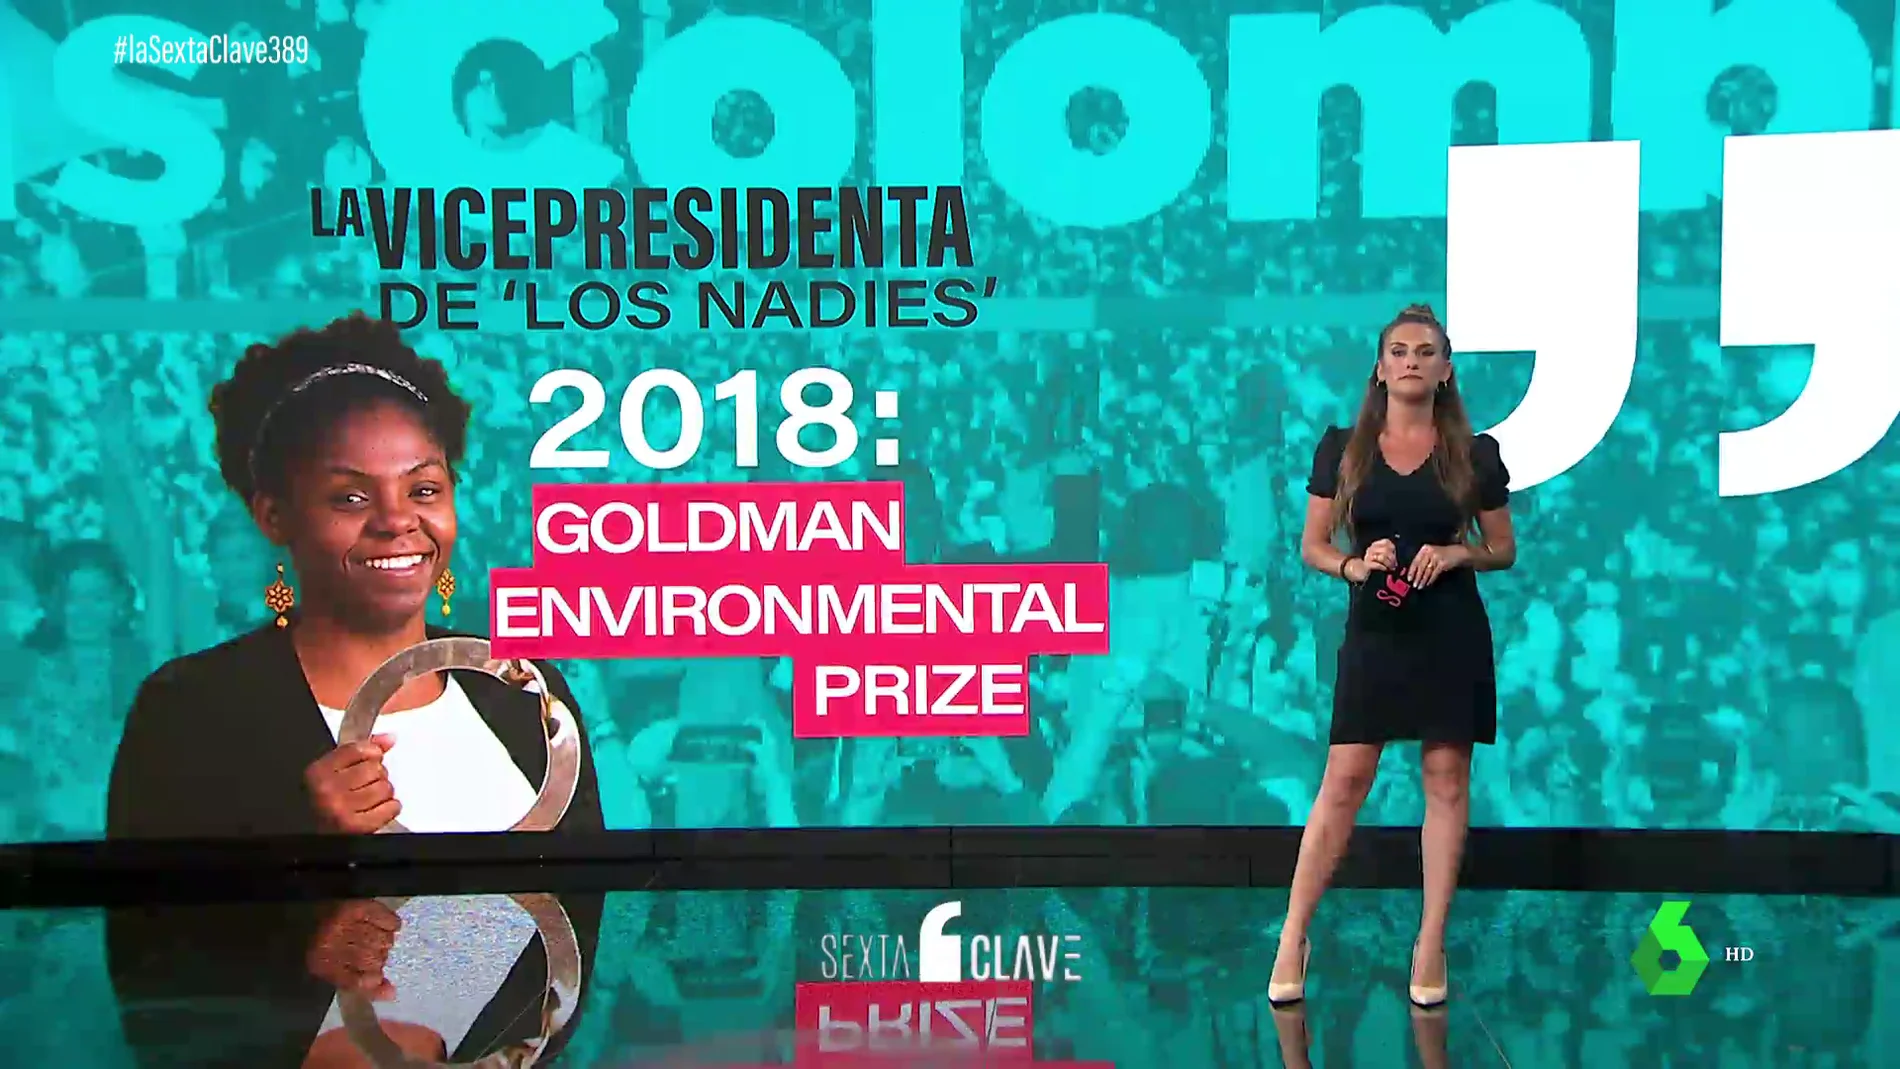 Feminista, defensora del medio ambiente y los derechos humanos: así es Francia Márquez, la primera vicepresidenta afrodescendiente de Colombia